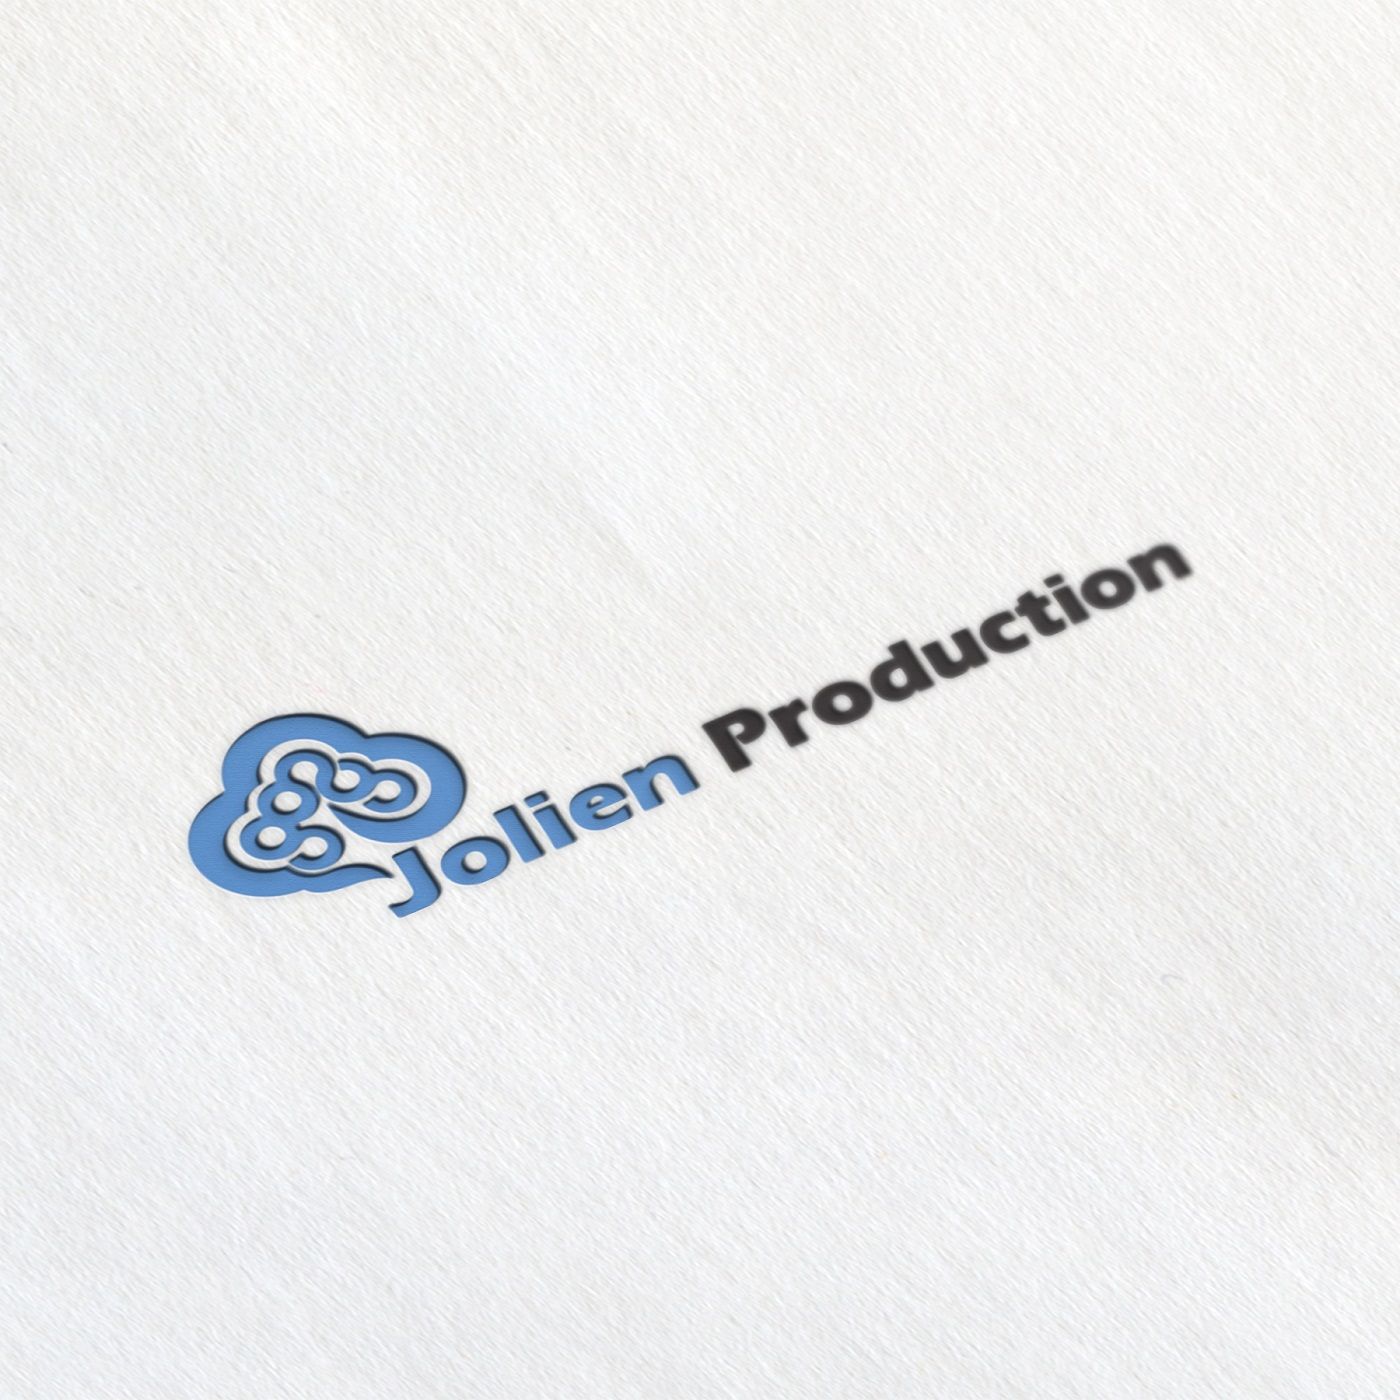 Логотип и фирменный стиль для Jolien Production - дизайнер djmirionec1